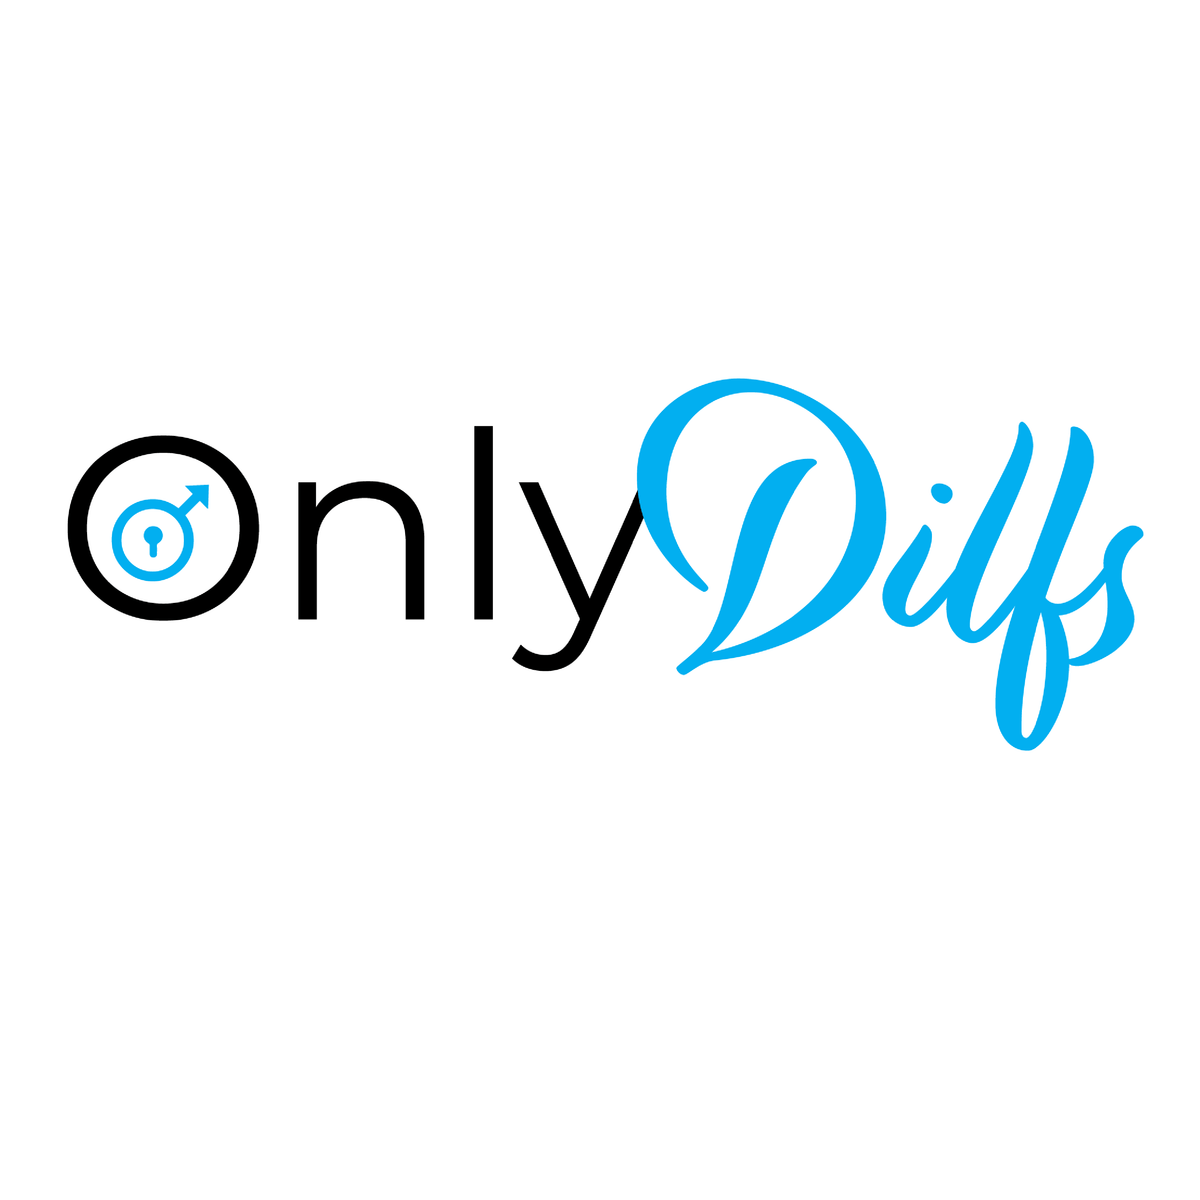 Only Dilfs 👨‍👧‍👦👀 - Men's T Shirt